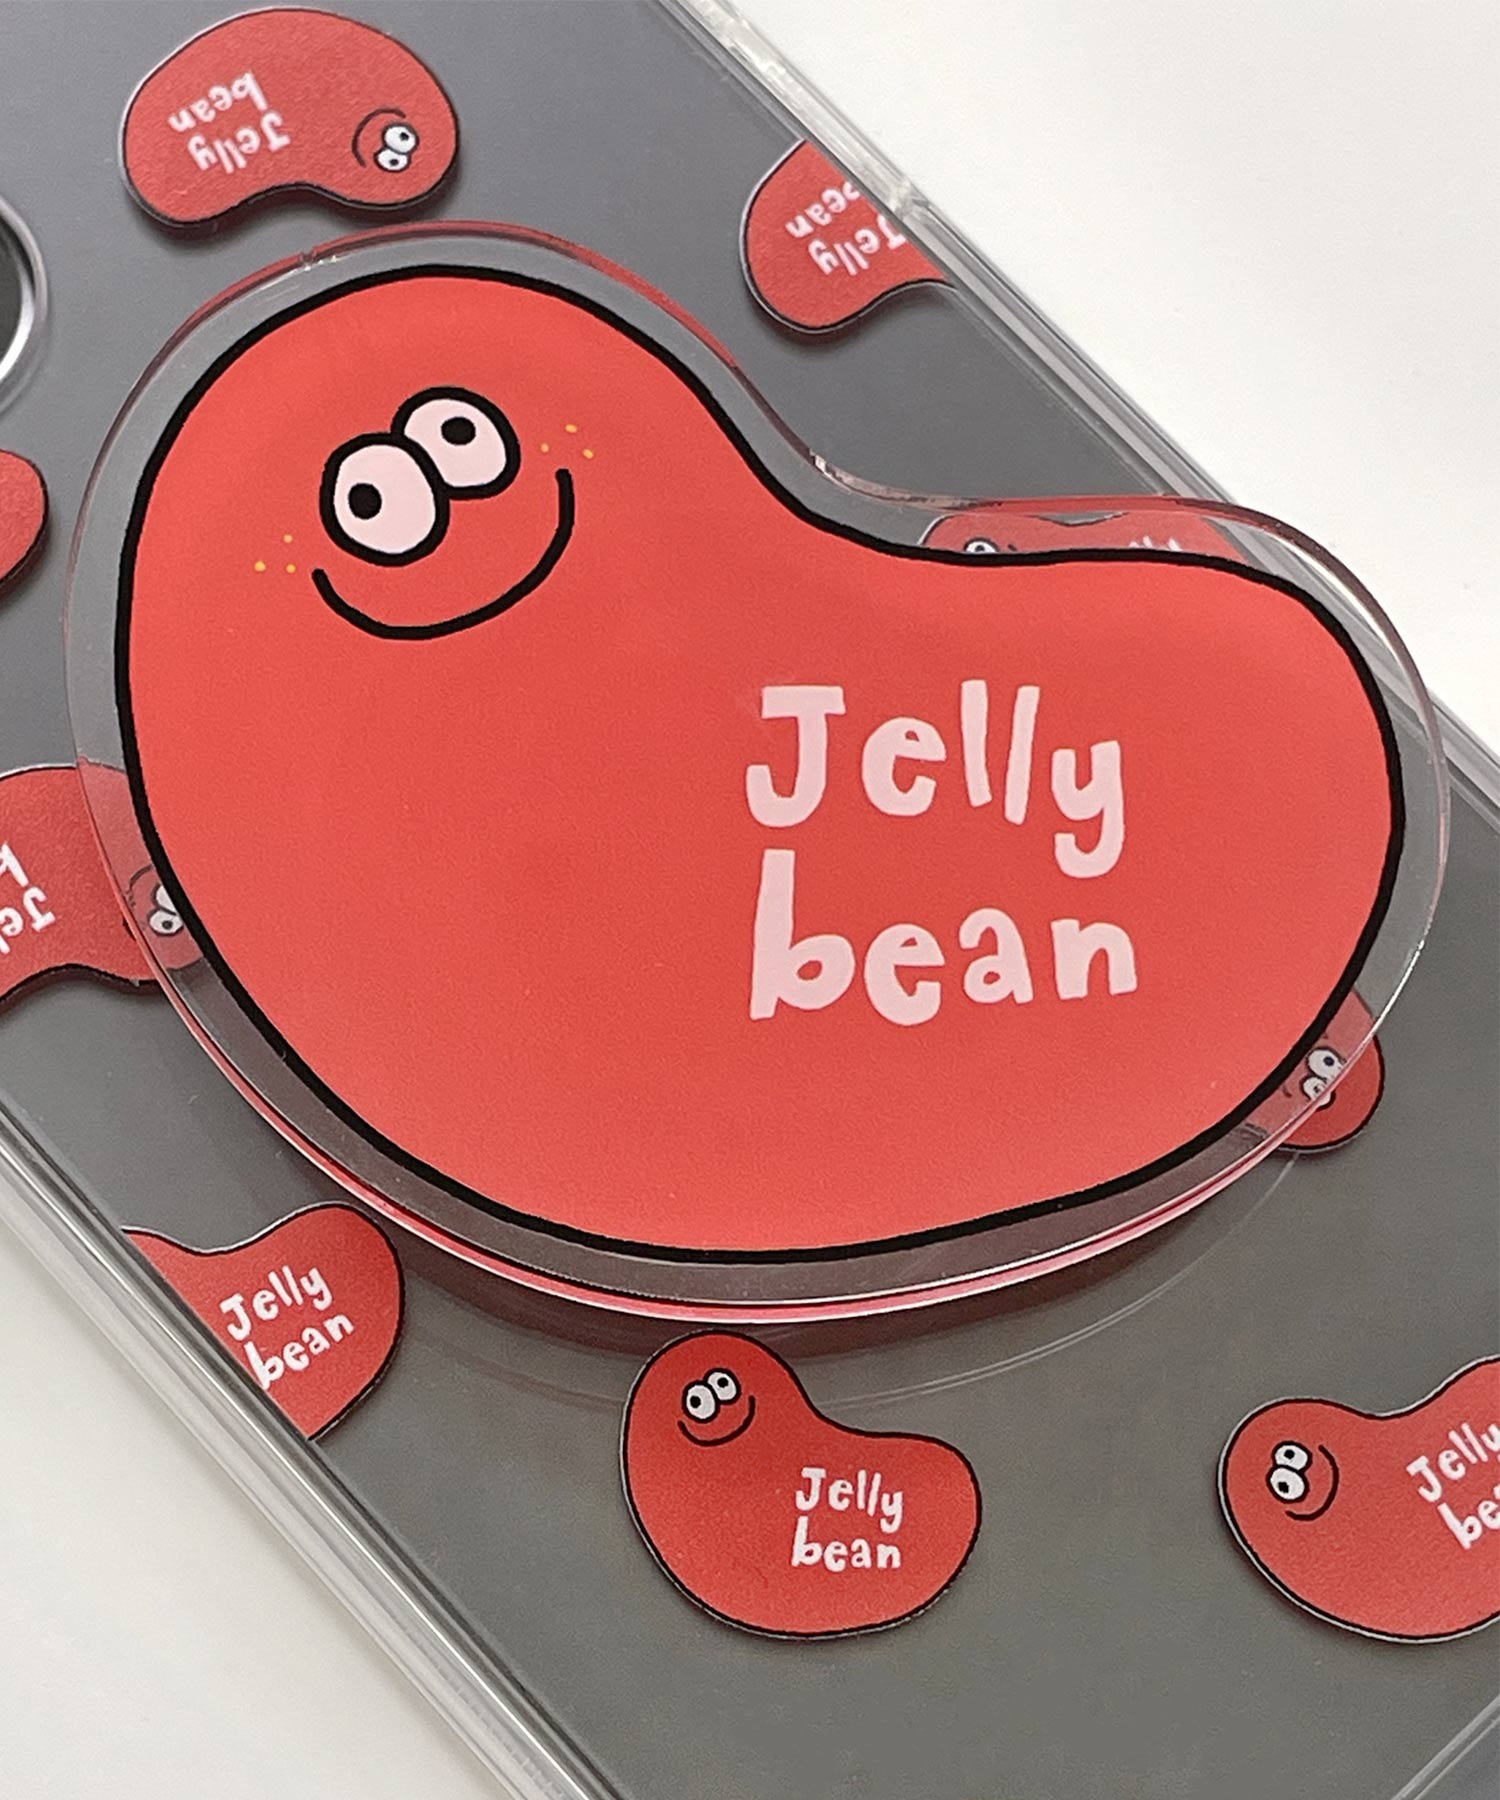 The Weird Jellybean 아이폰 케이스 SET